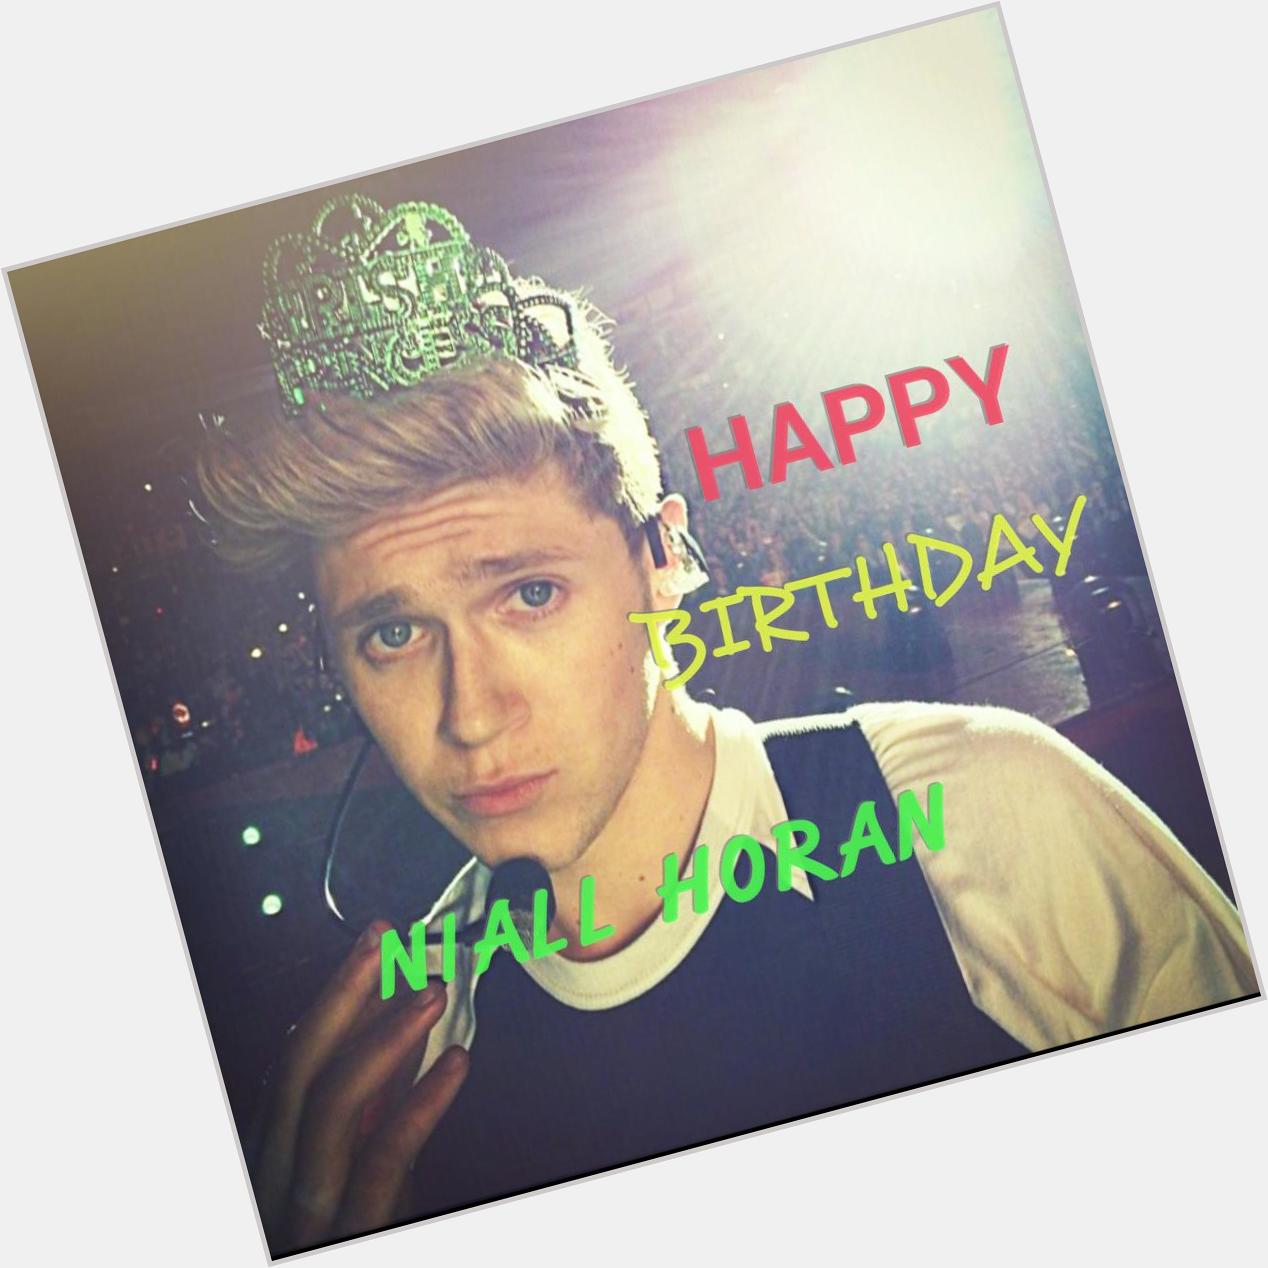 Happy birthday to you happy birthday to you happy birthday Niall Horan Happy birthday to you    